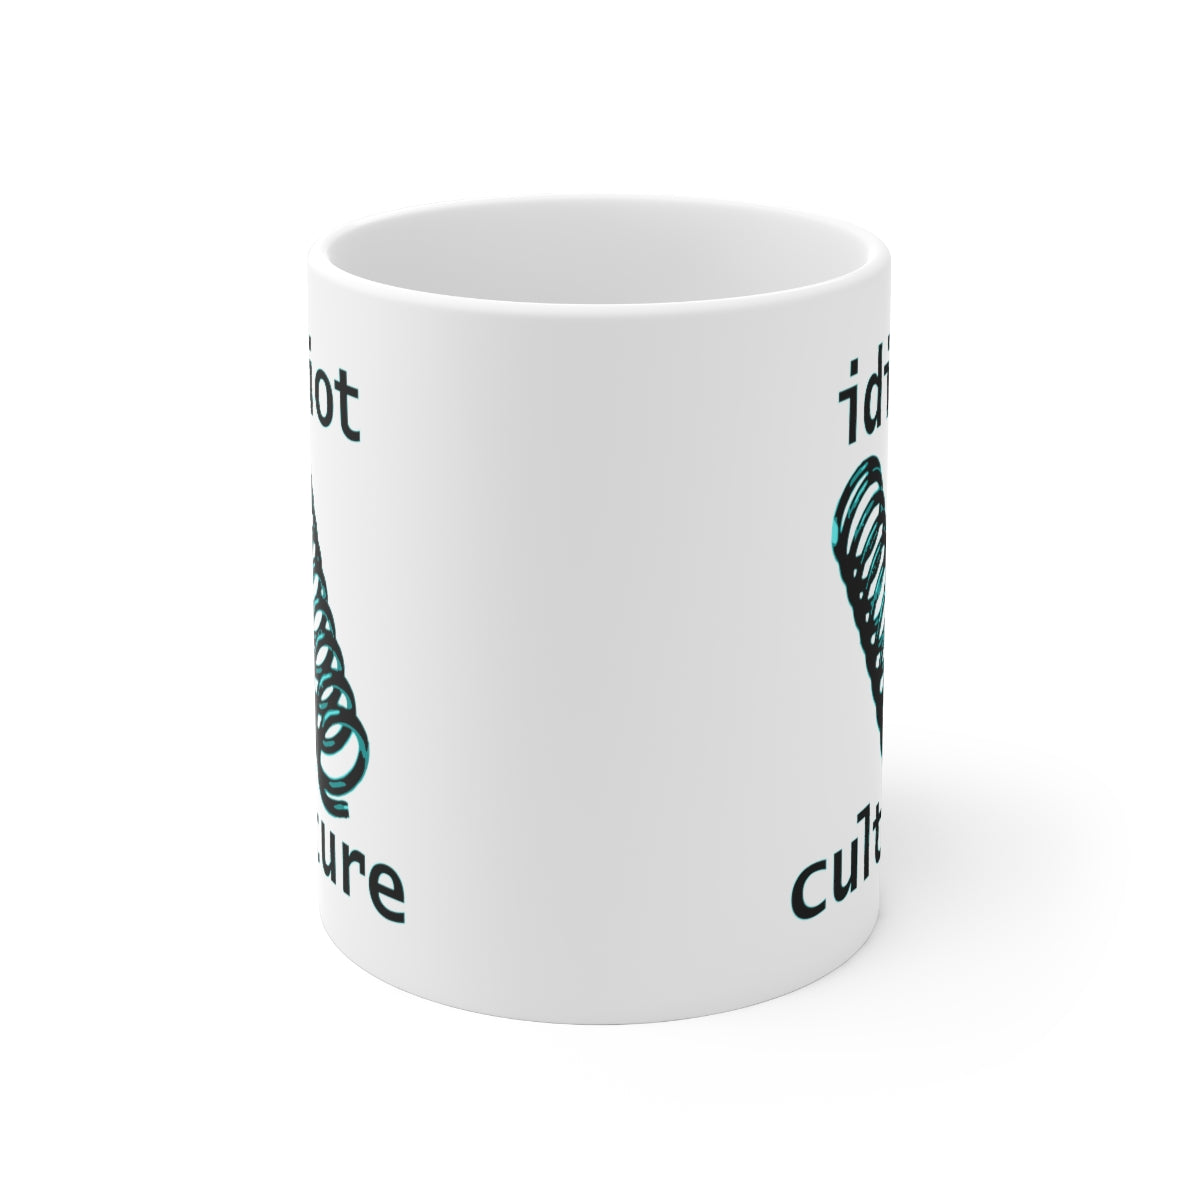 IDIOT CULTURE Ceramic Mug